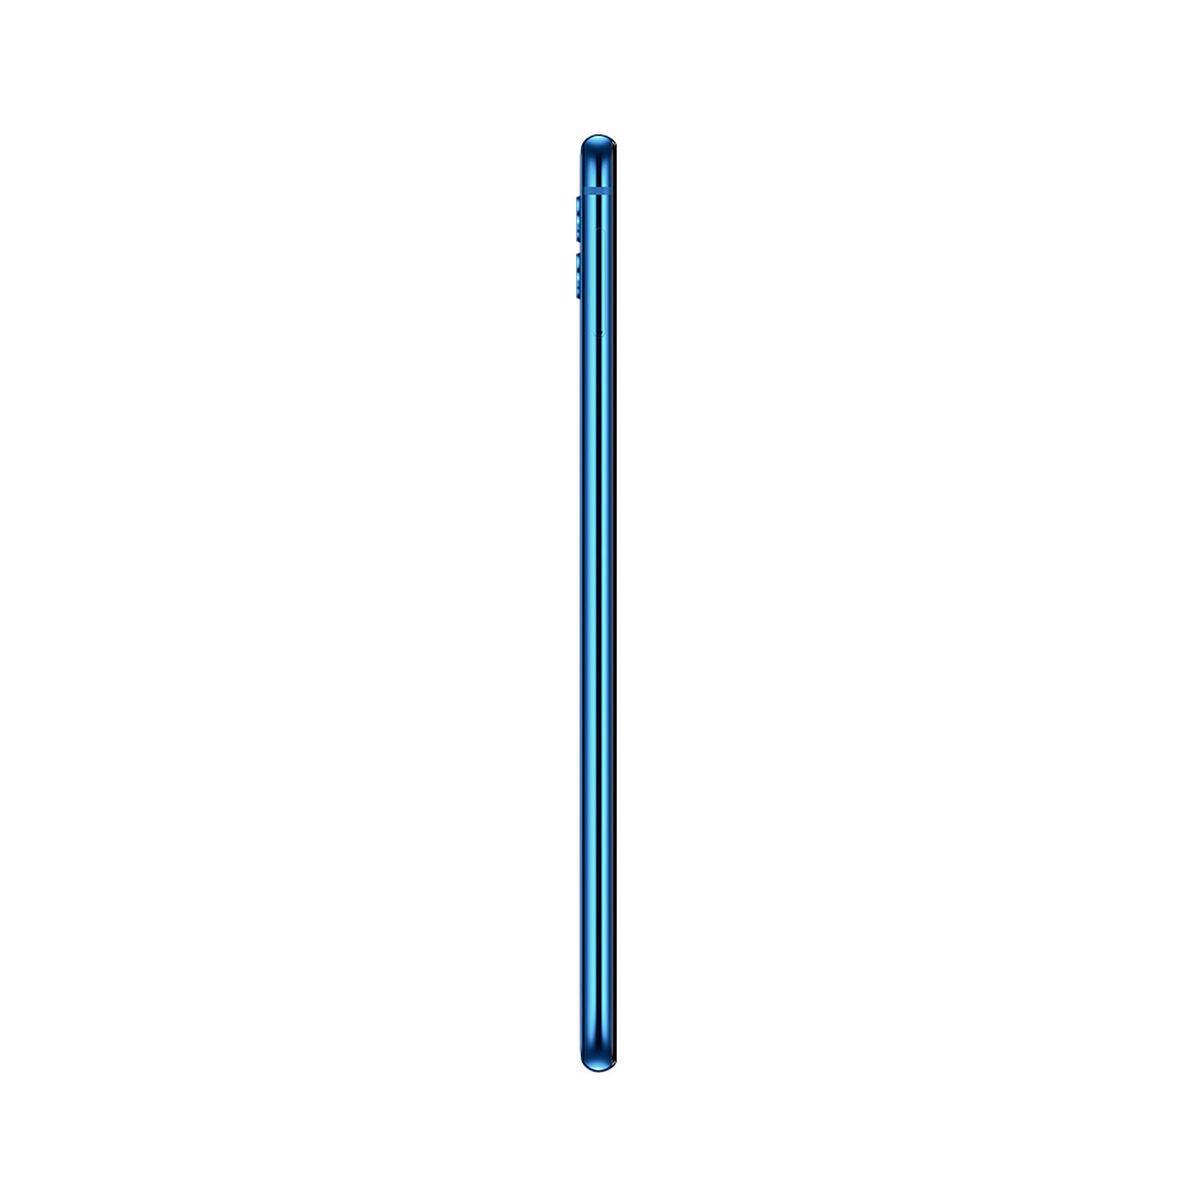 Celular Huawei Mate 20 Lite 6.3" Azul Liberado